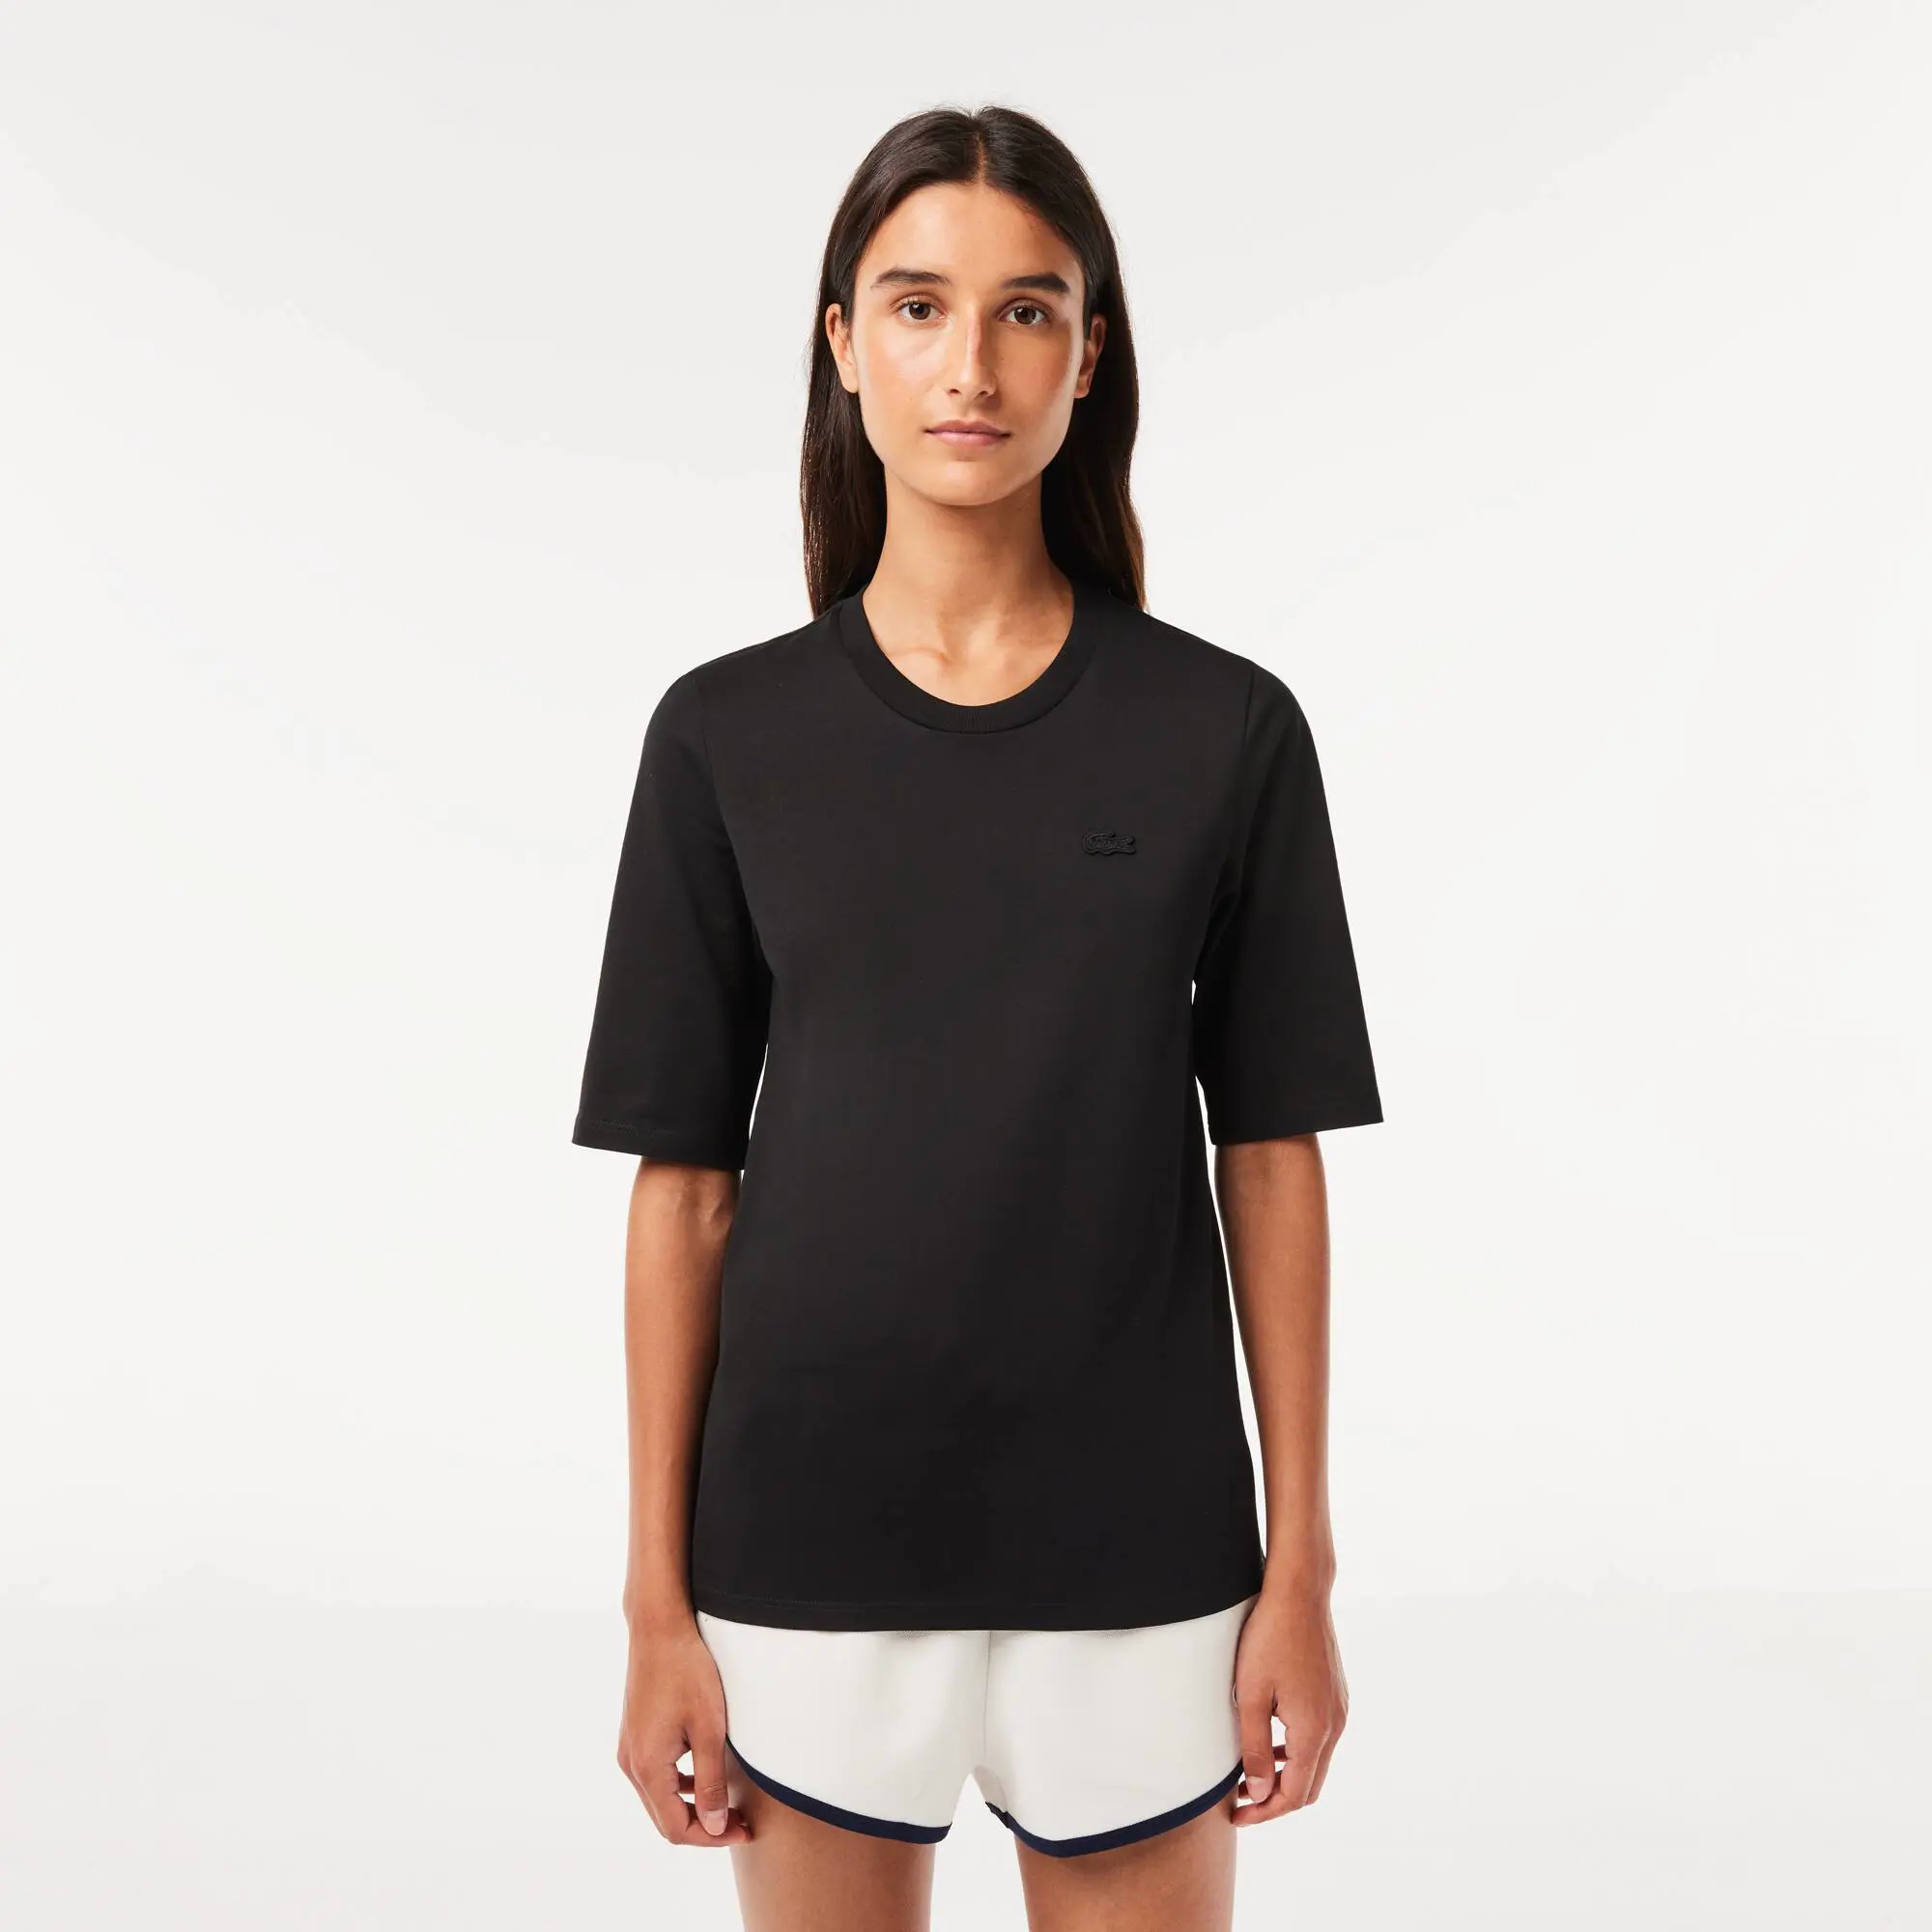 Lacoste Women’s Crew Neck Cotton T-shirt. 1